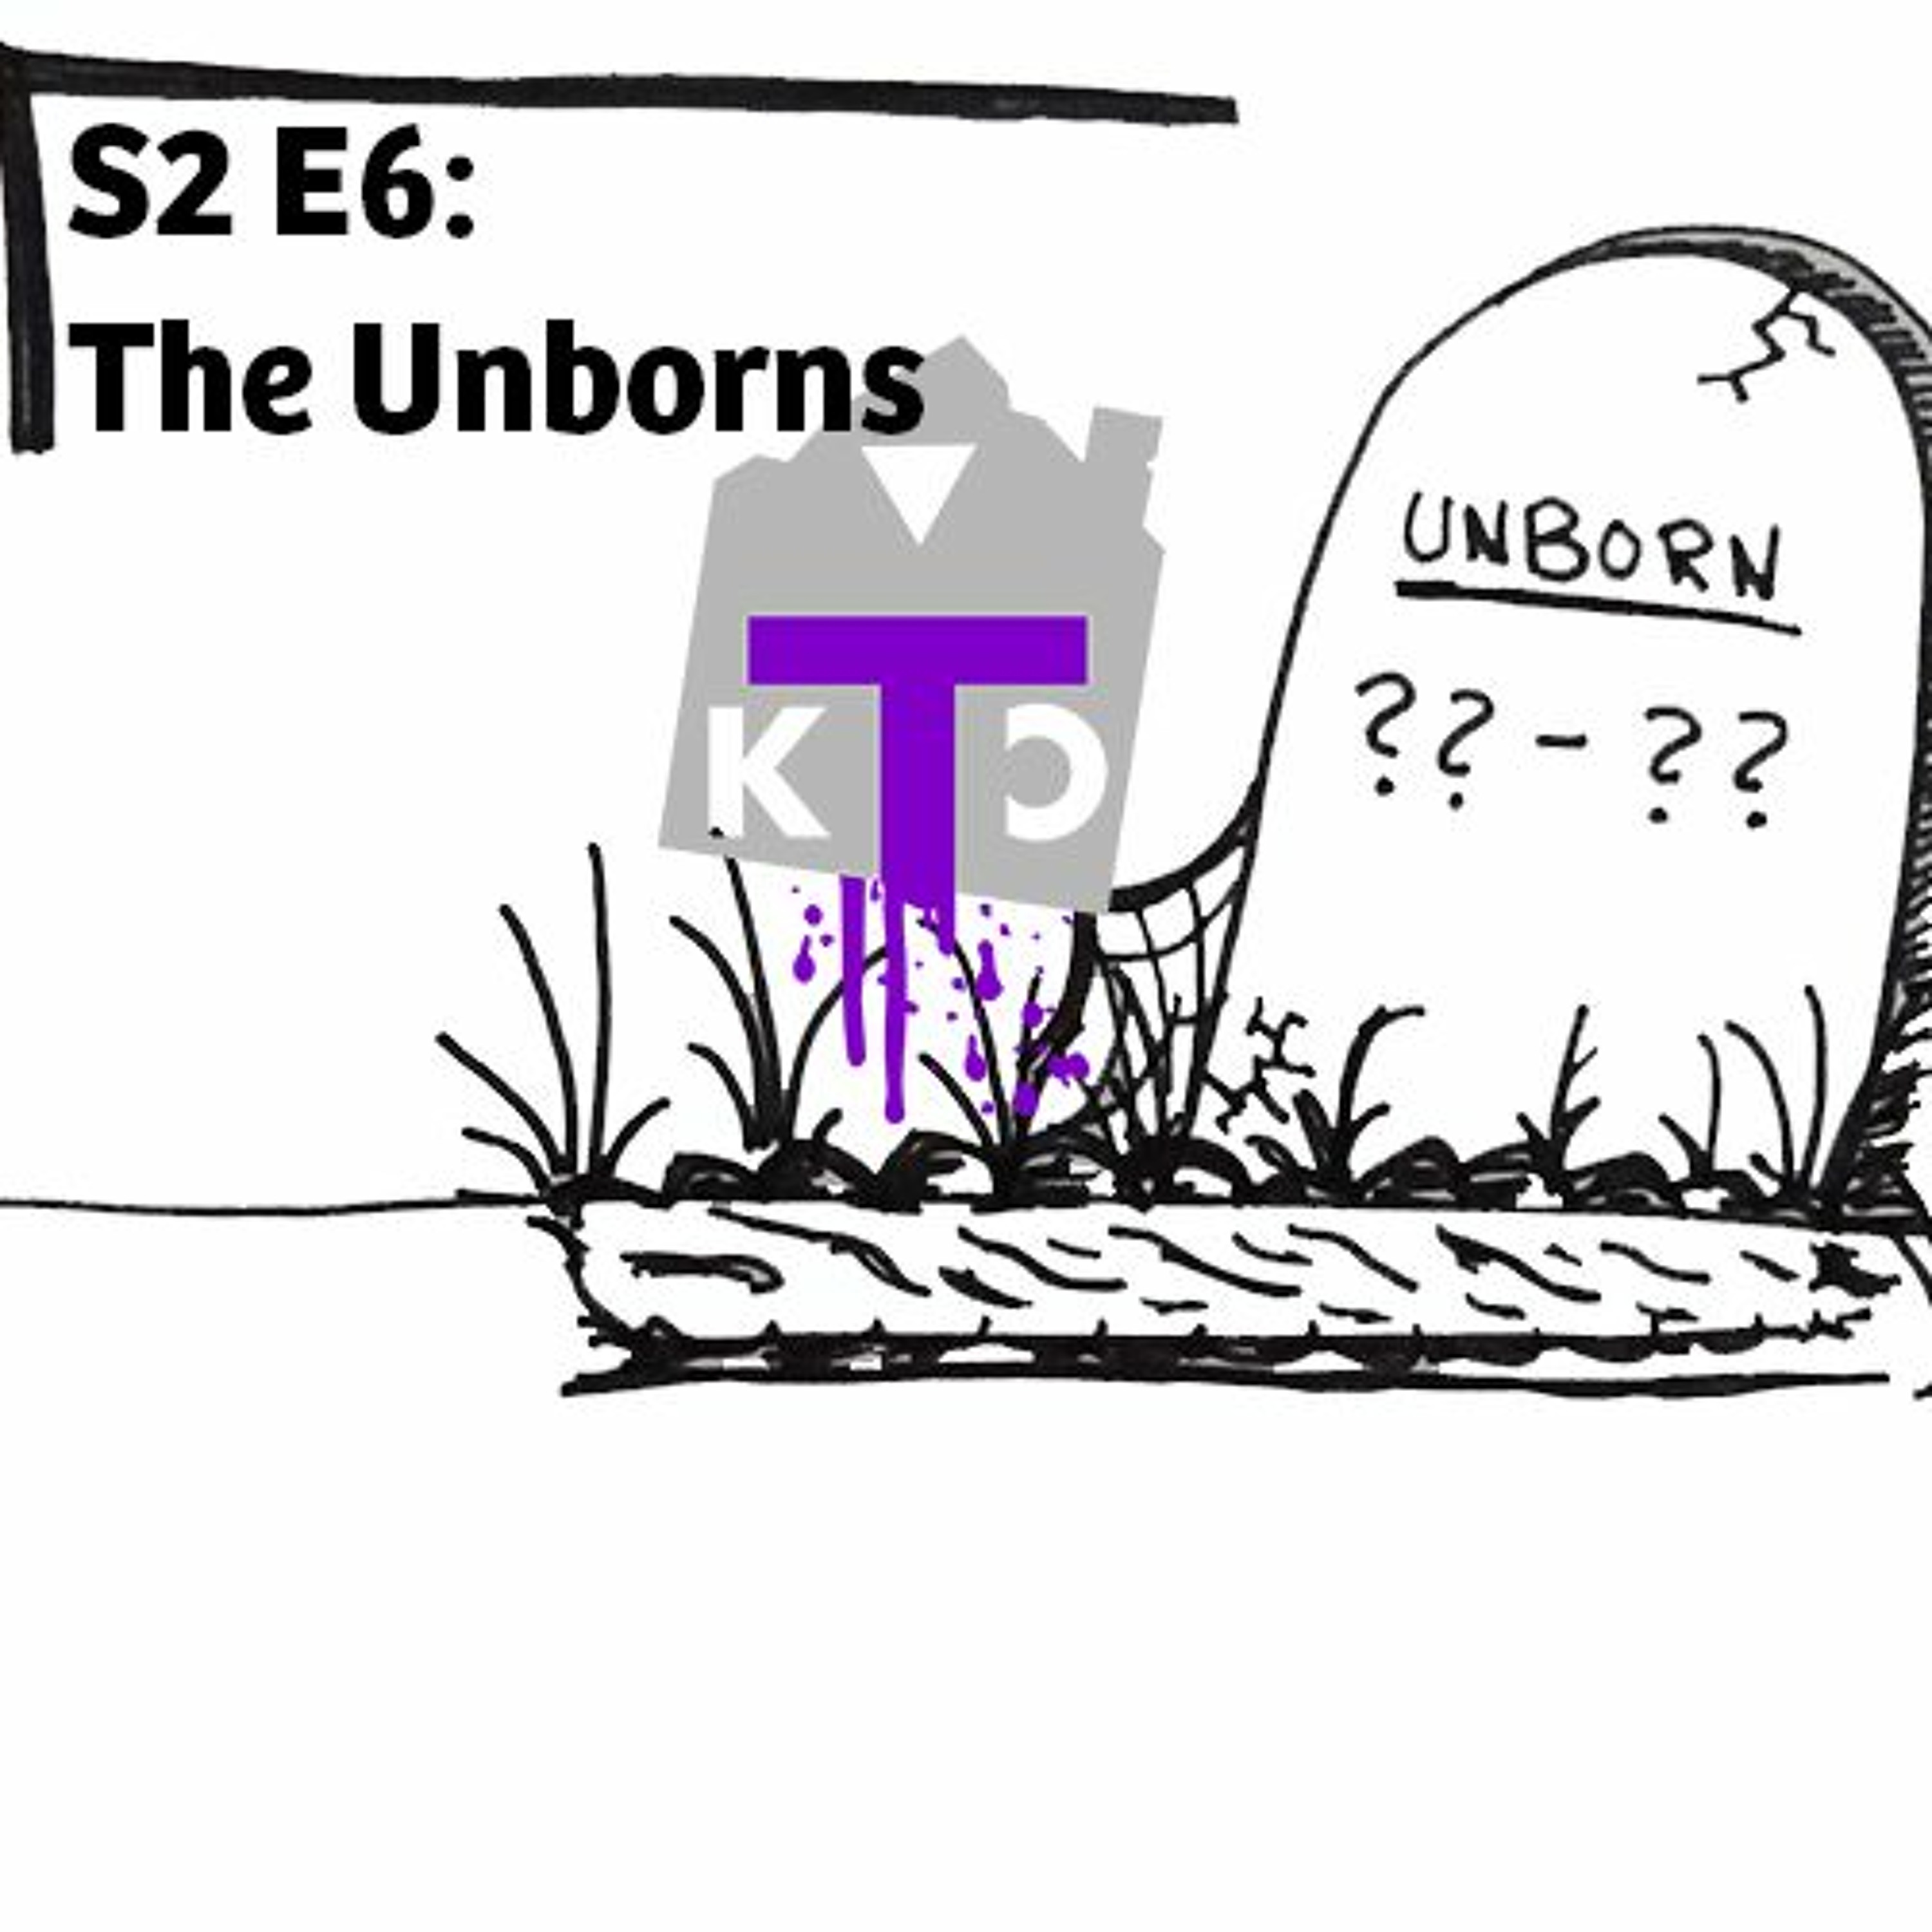 S2 E6: The Unborns